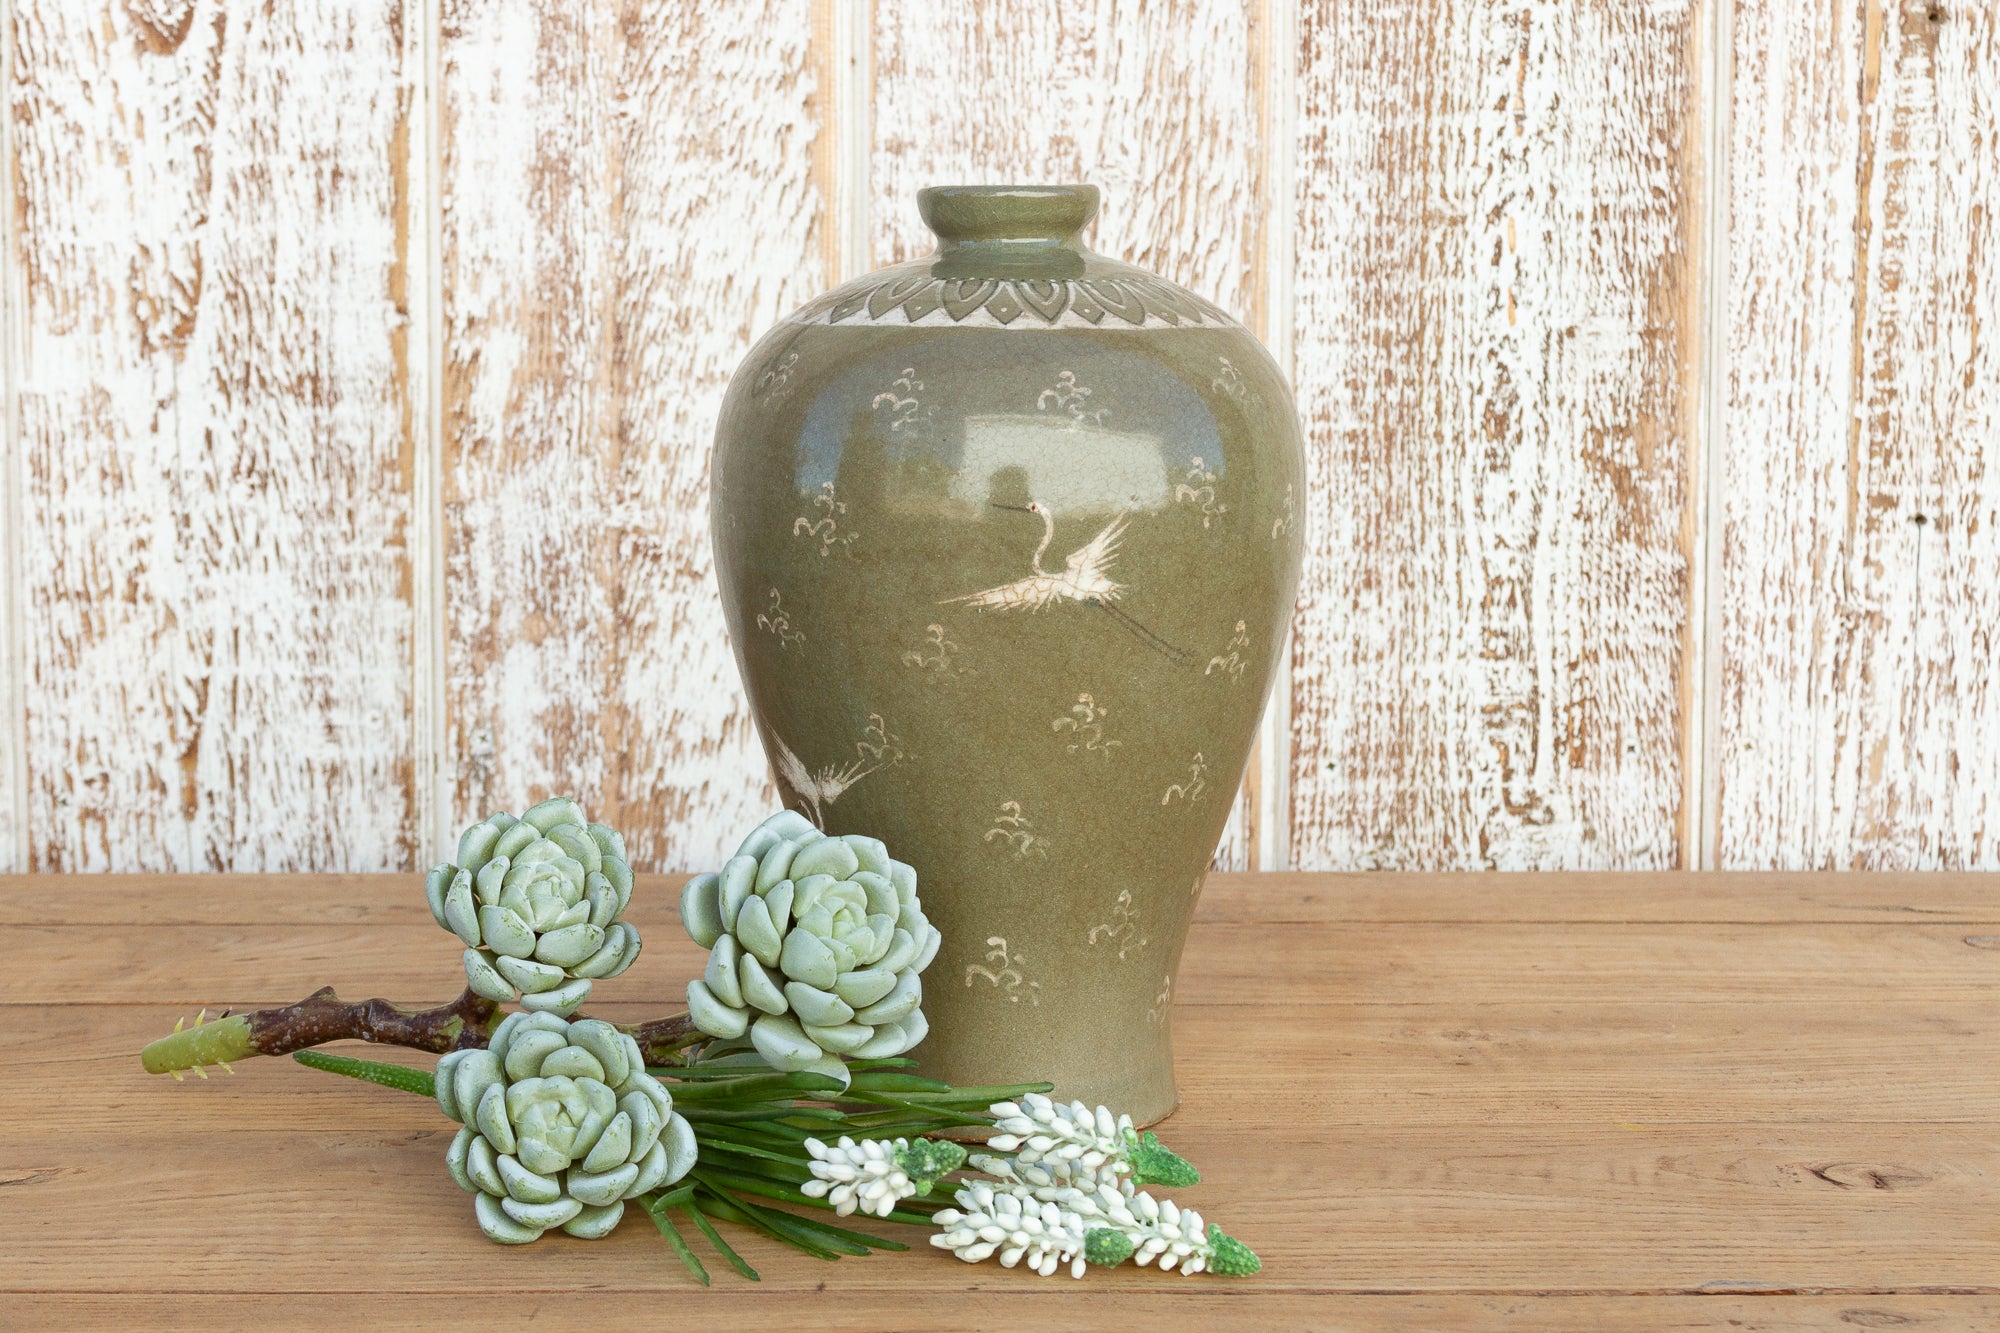 DE-COR | Ispirazione globale, Incantevole vaso coreano d'epoca smaltato di verde